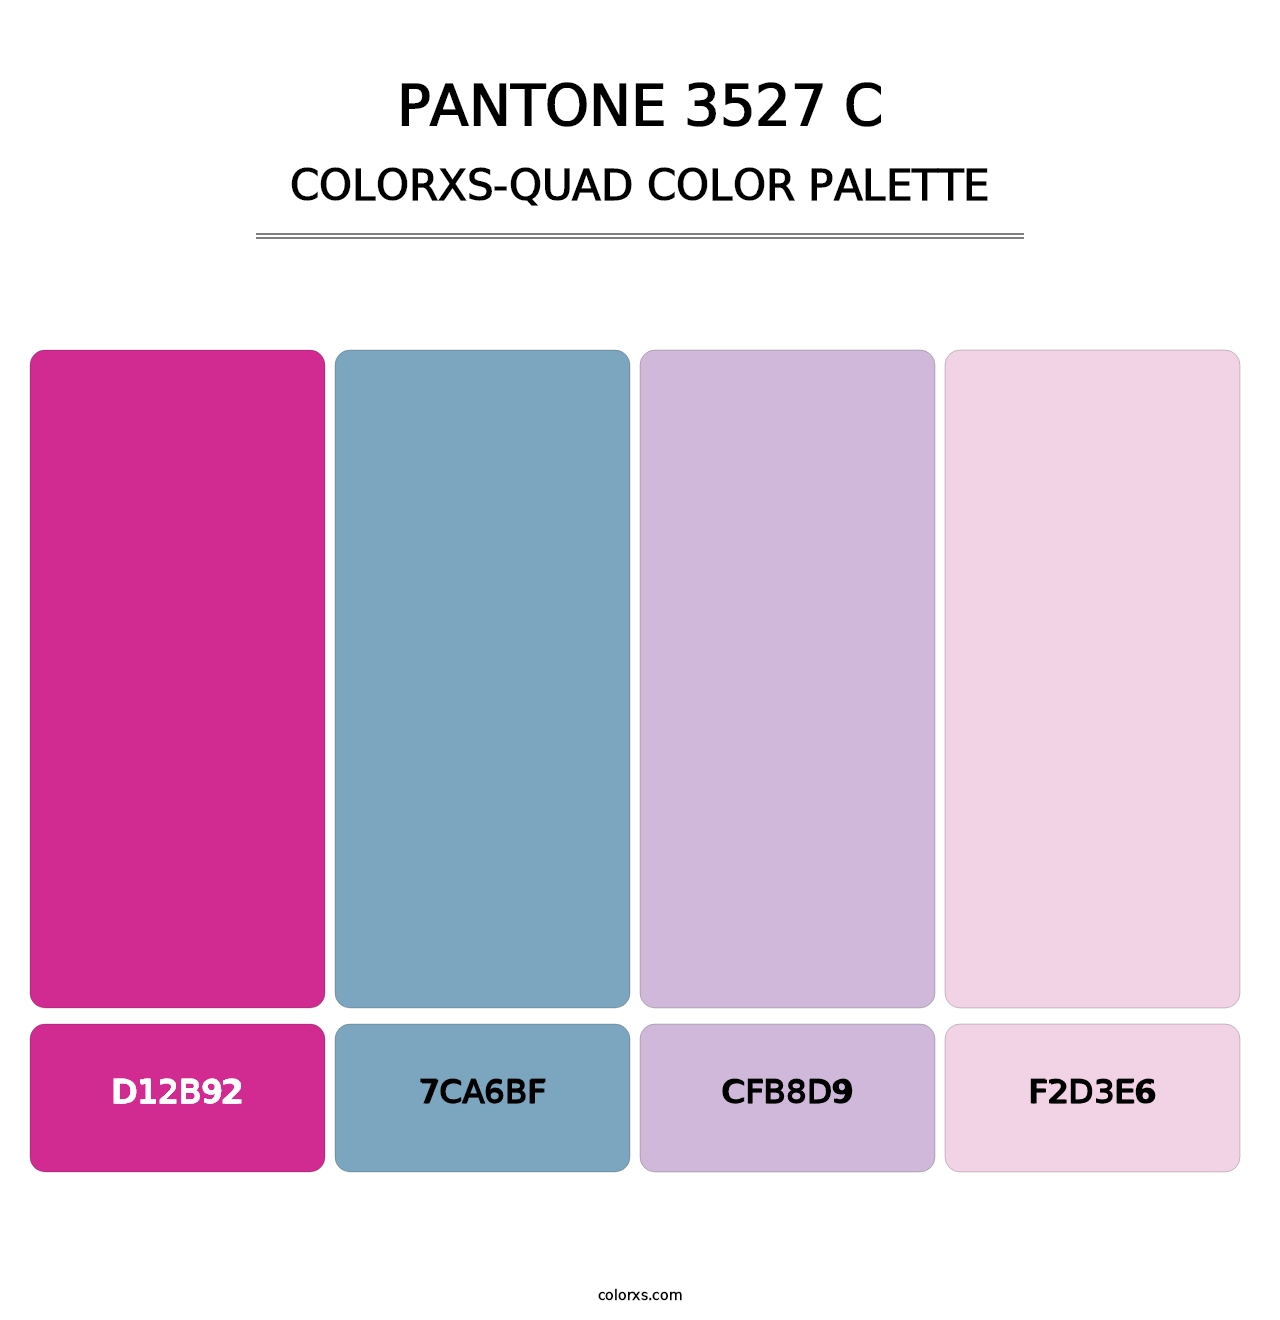 PANTONE 3527 C - Colorxs Quad Palette